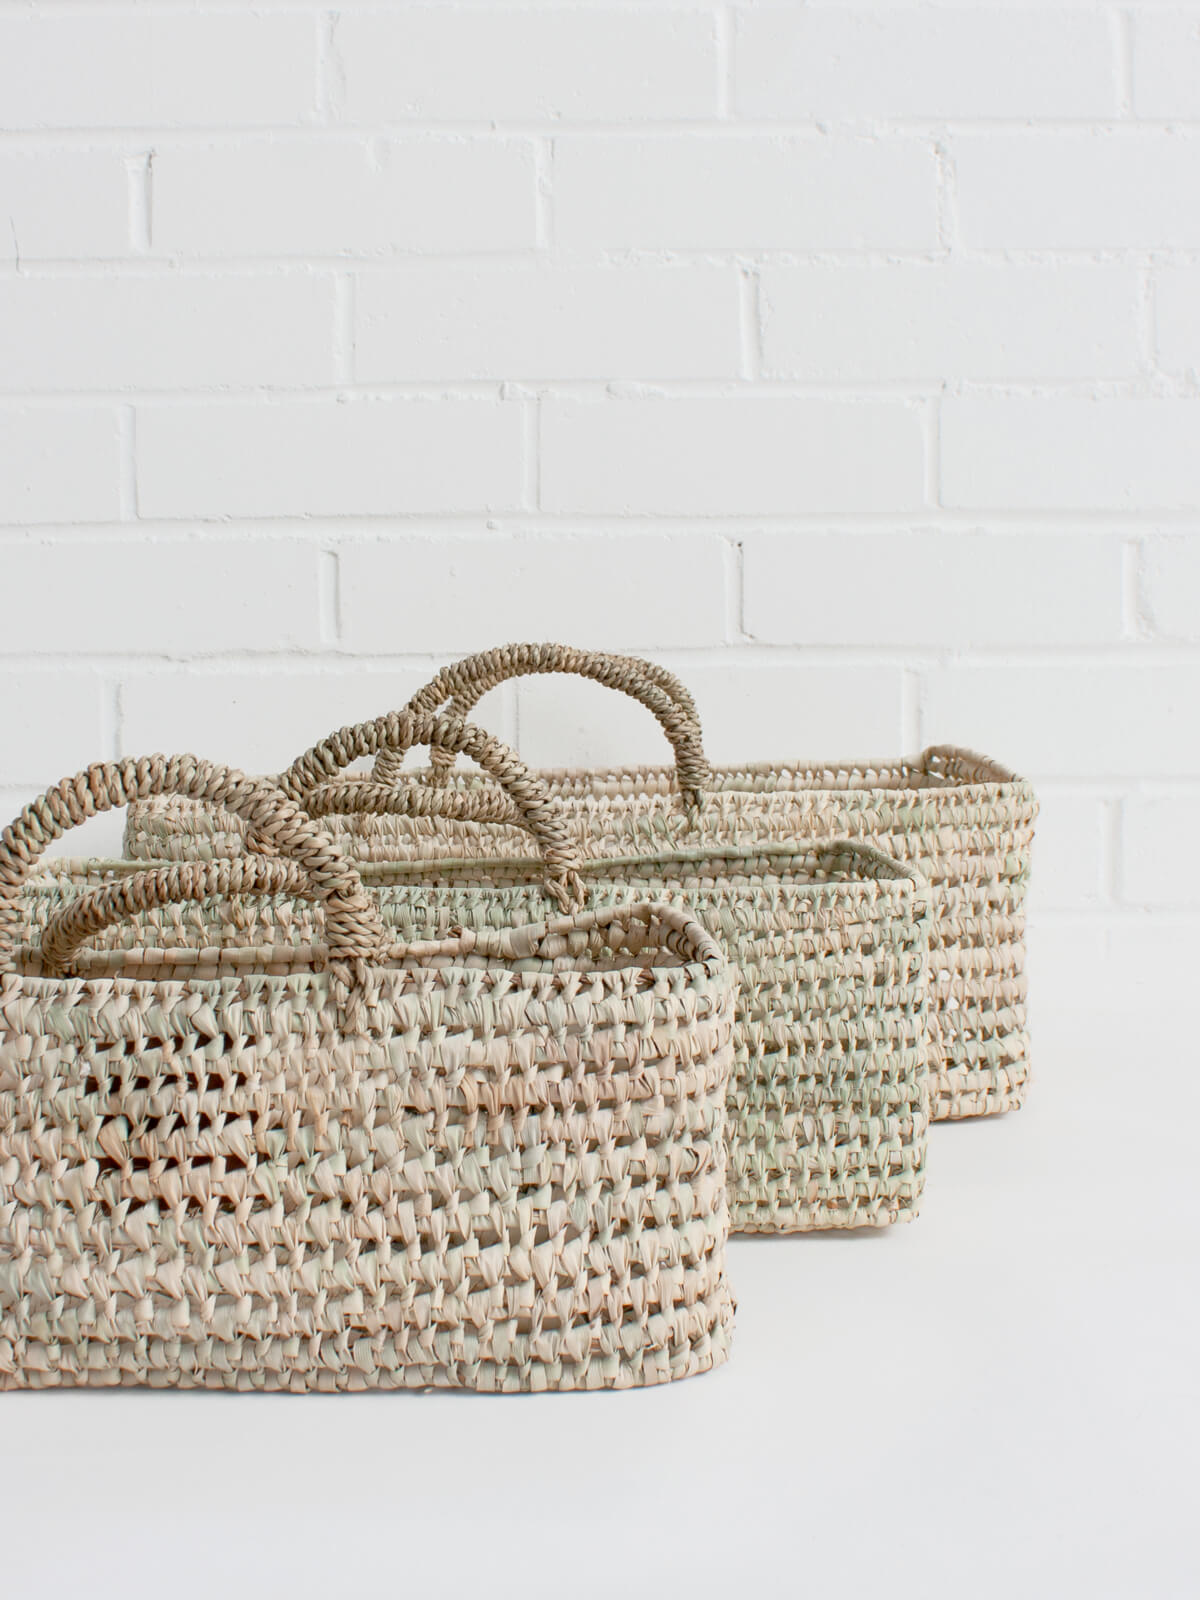 Open Weave Garden Baskets